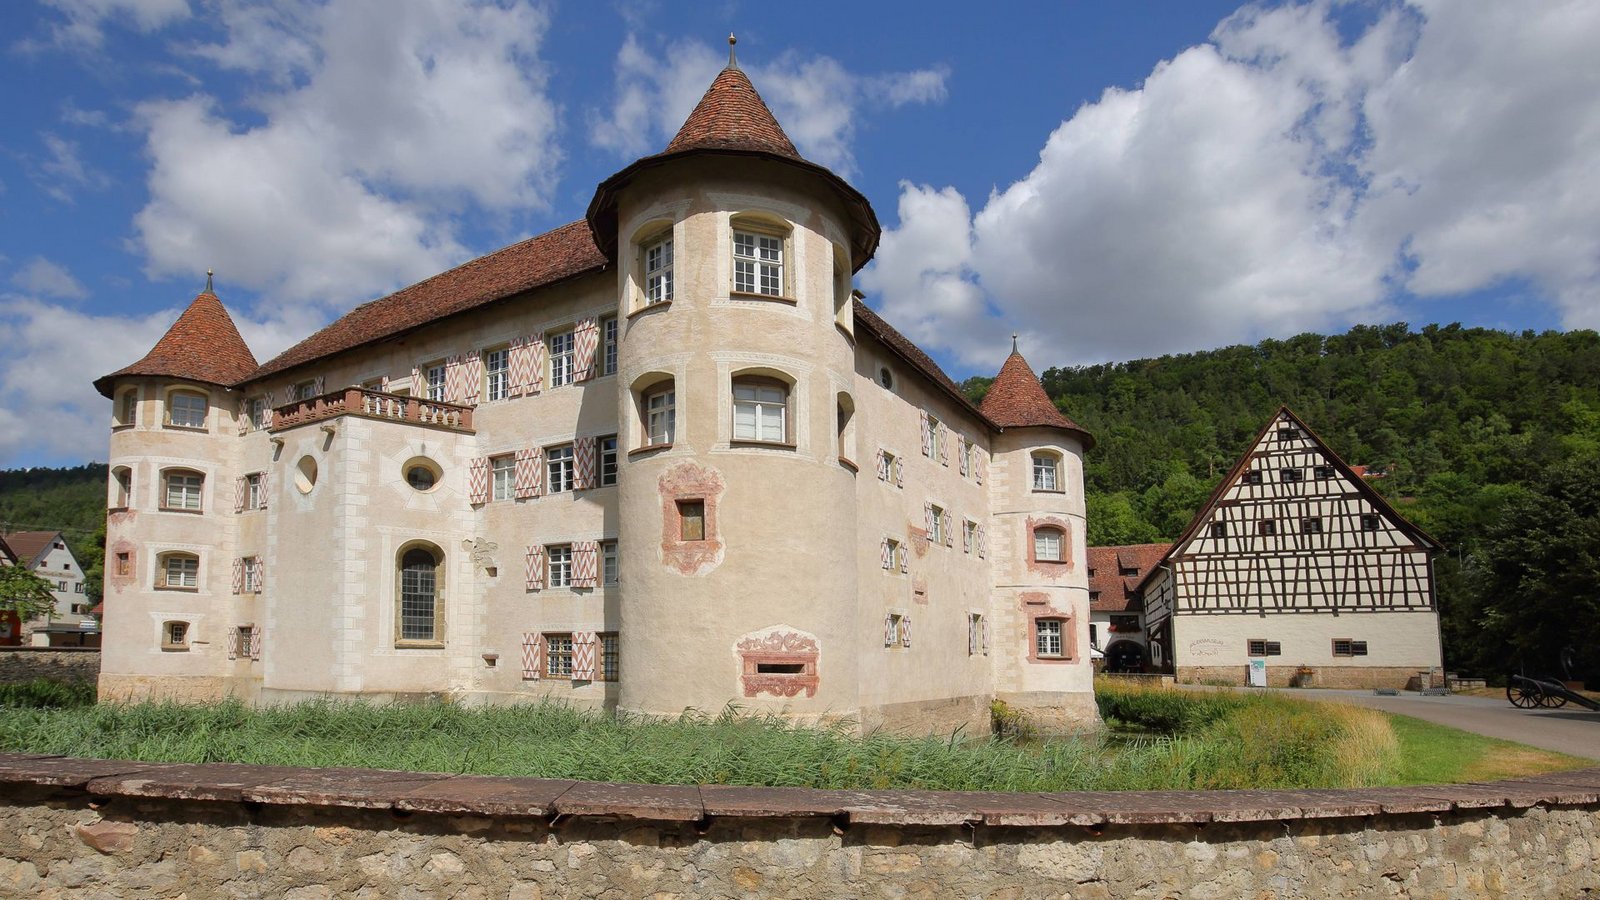 Besonderes Ausflugsziel und lange Historie:  Burg Wasserschloss Glatt  in Sulz am Neckar.Foto: IMAGO/ALIMDI.NET/Gerald Abele